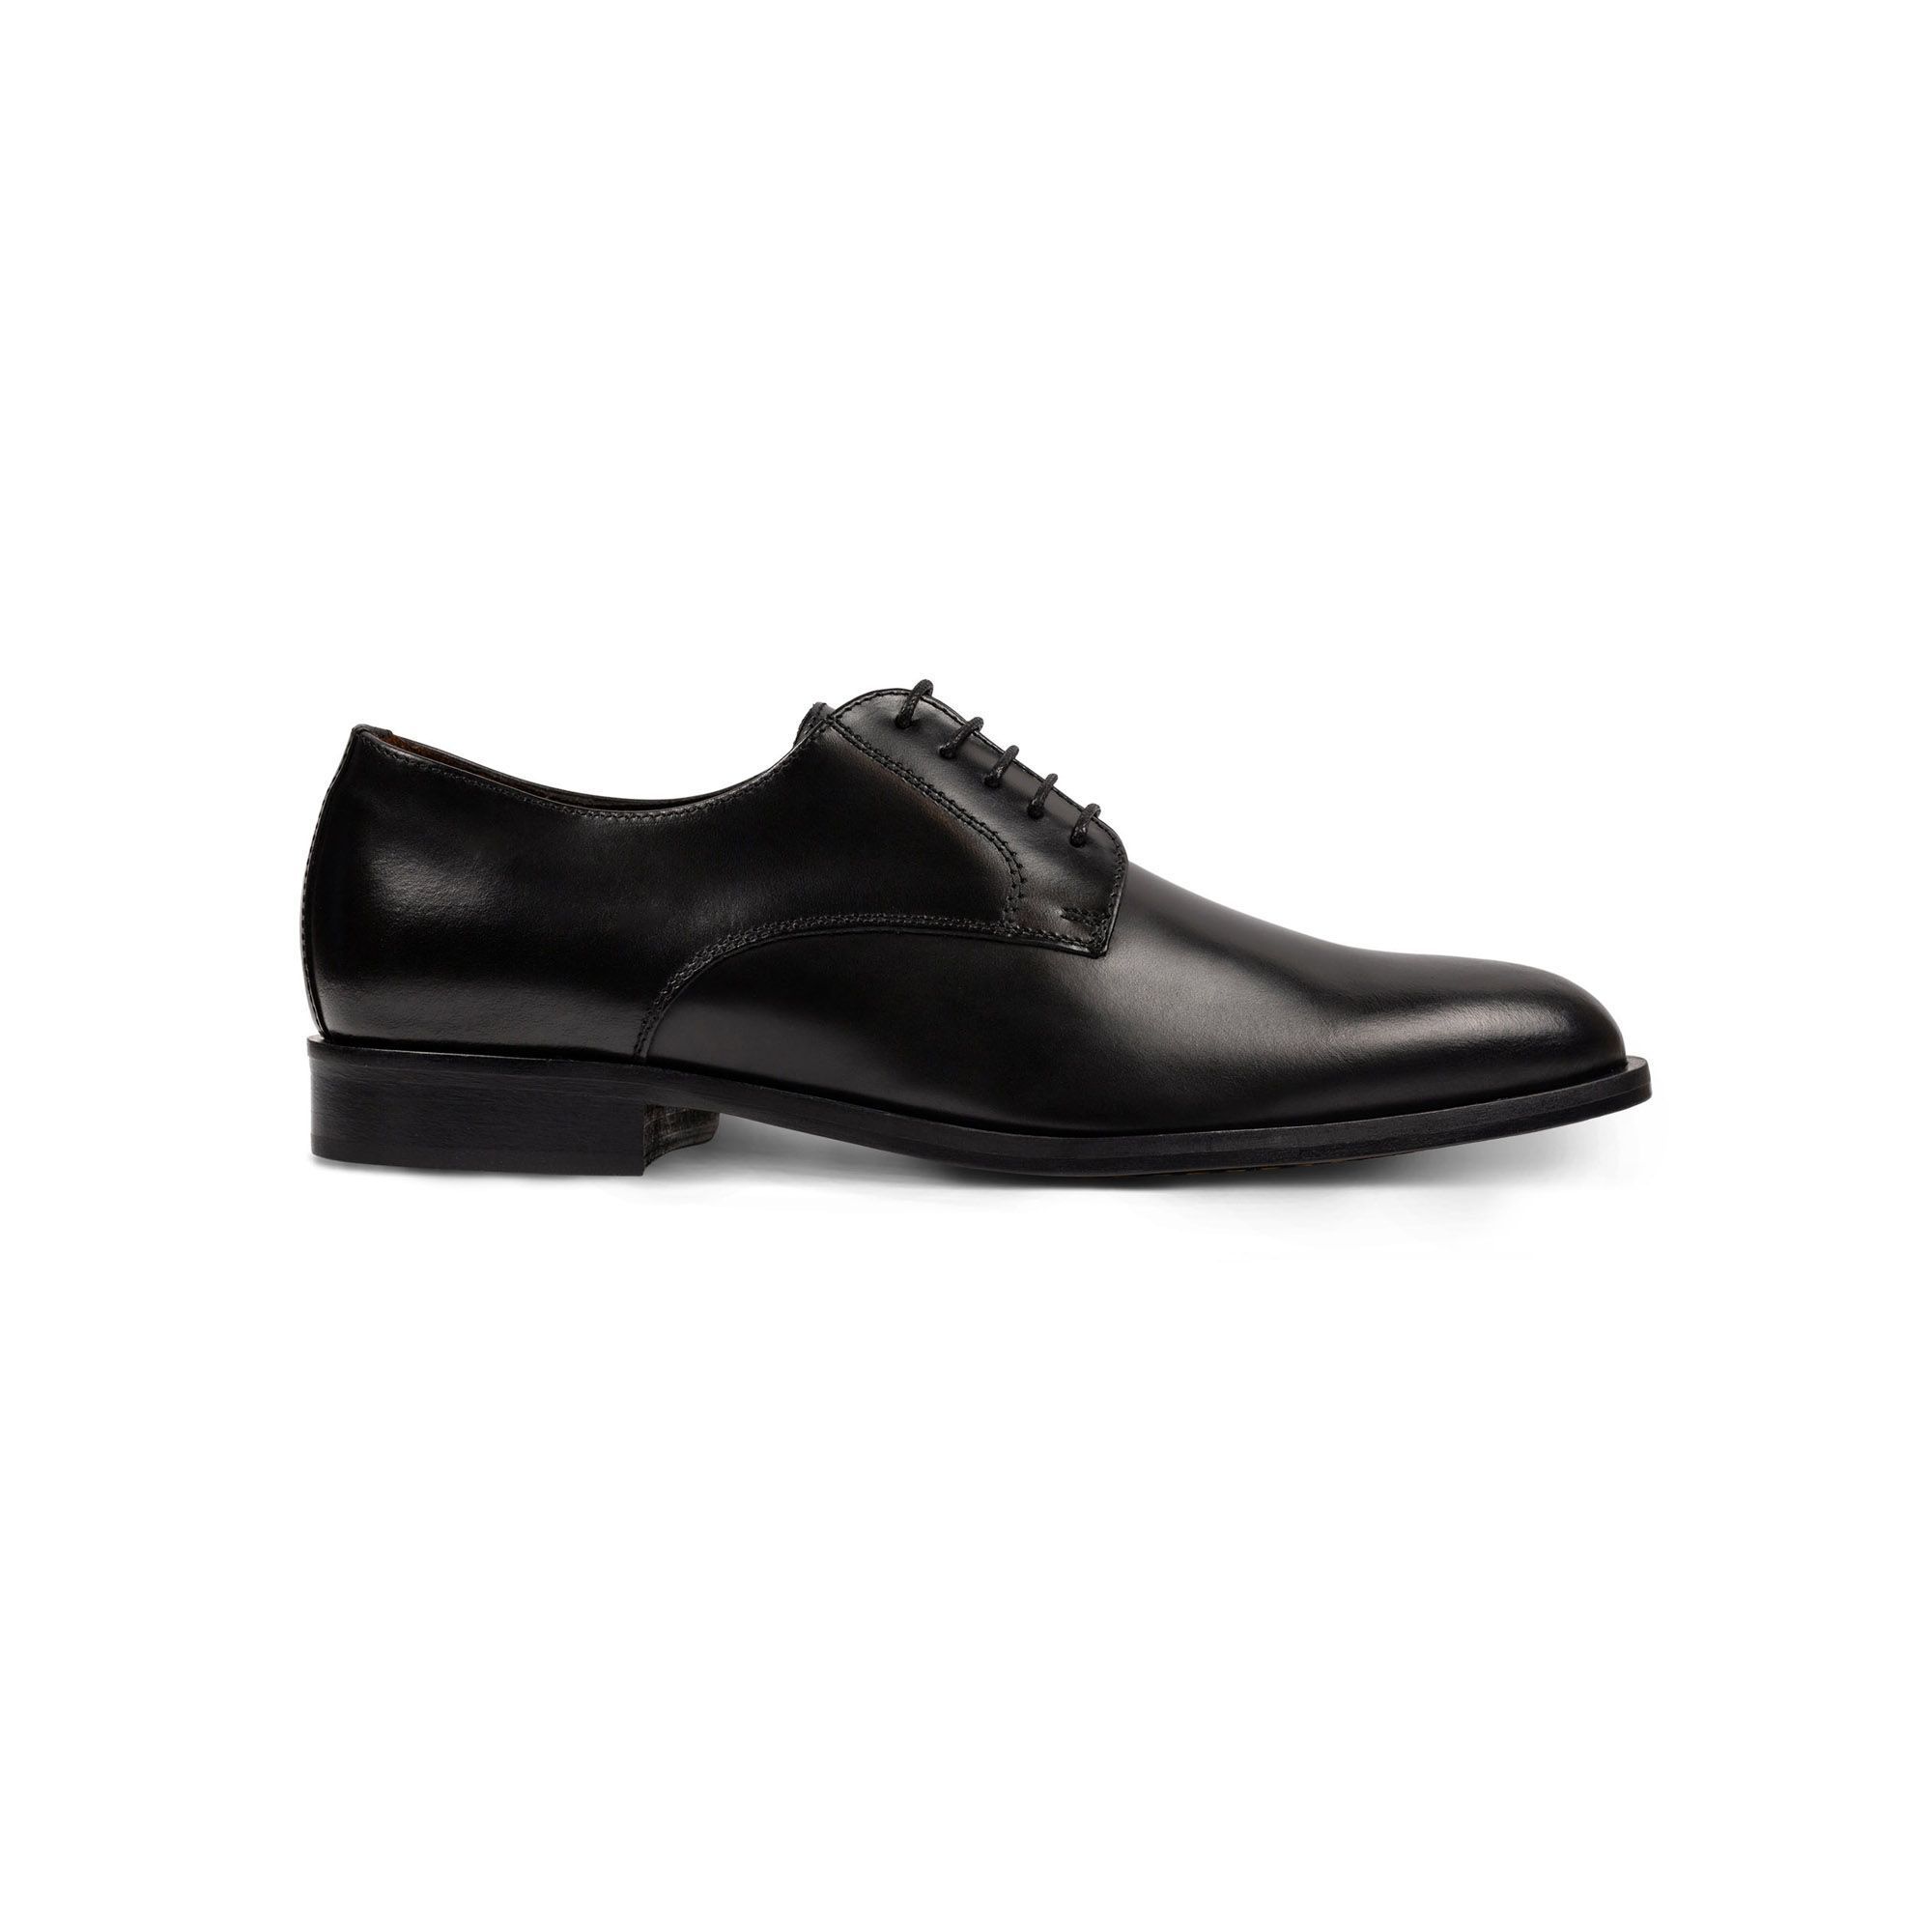 Men's black leather derby shoes